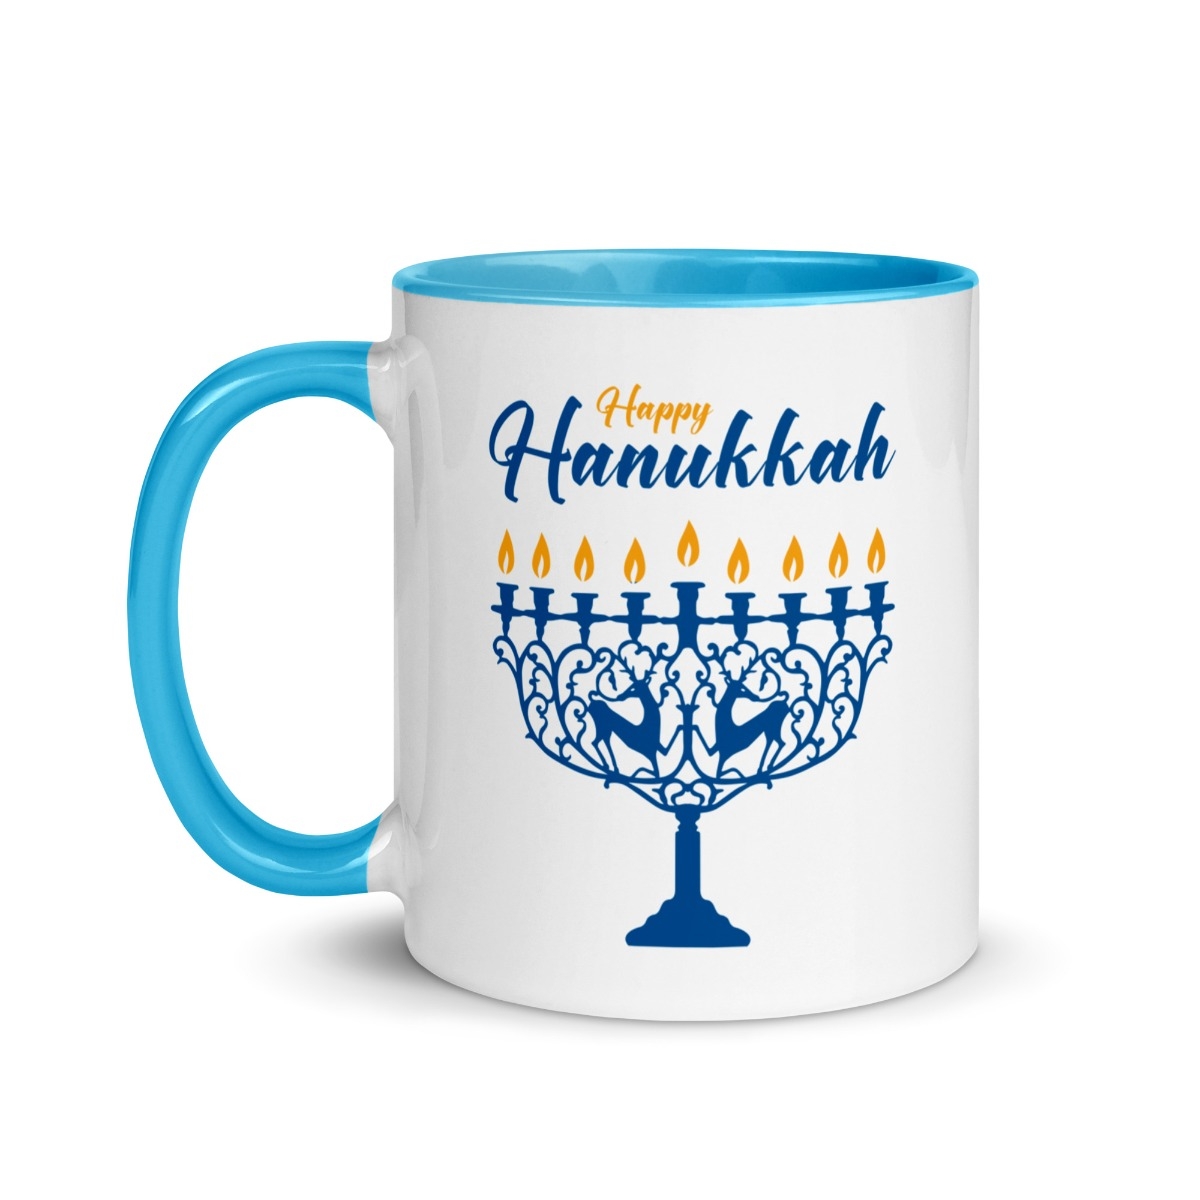 Happy Hanukkah Mug - 1